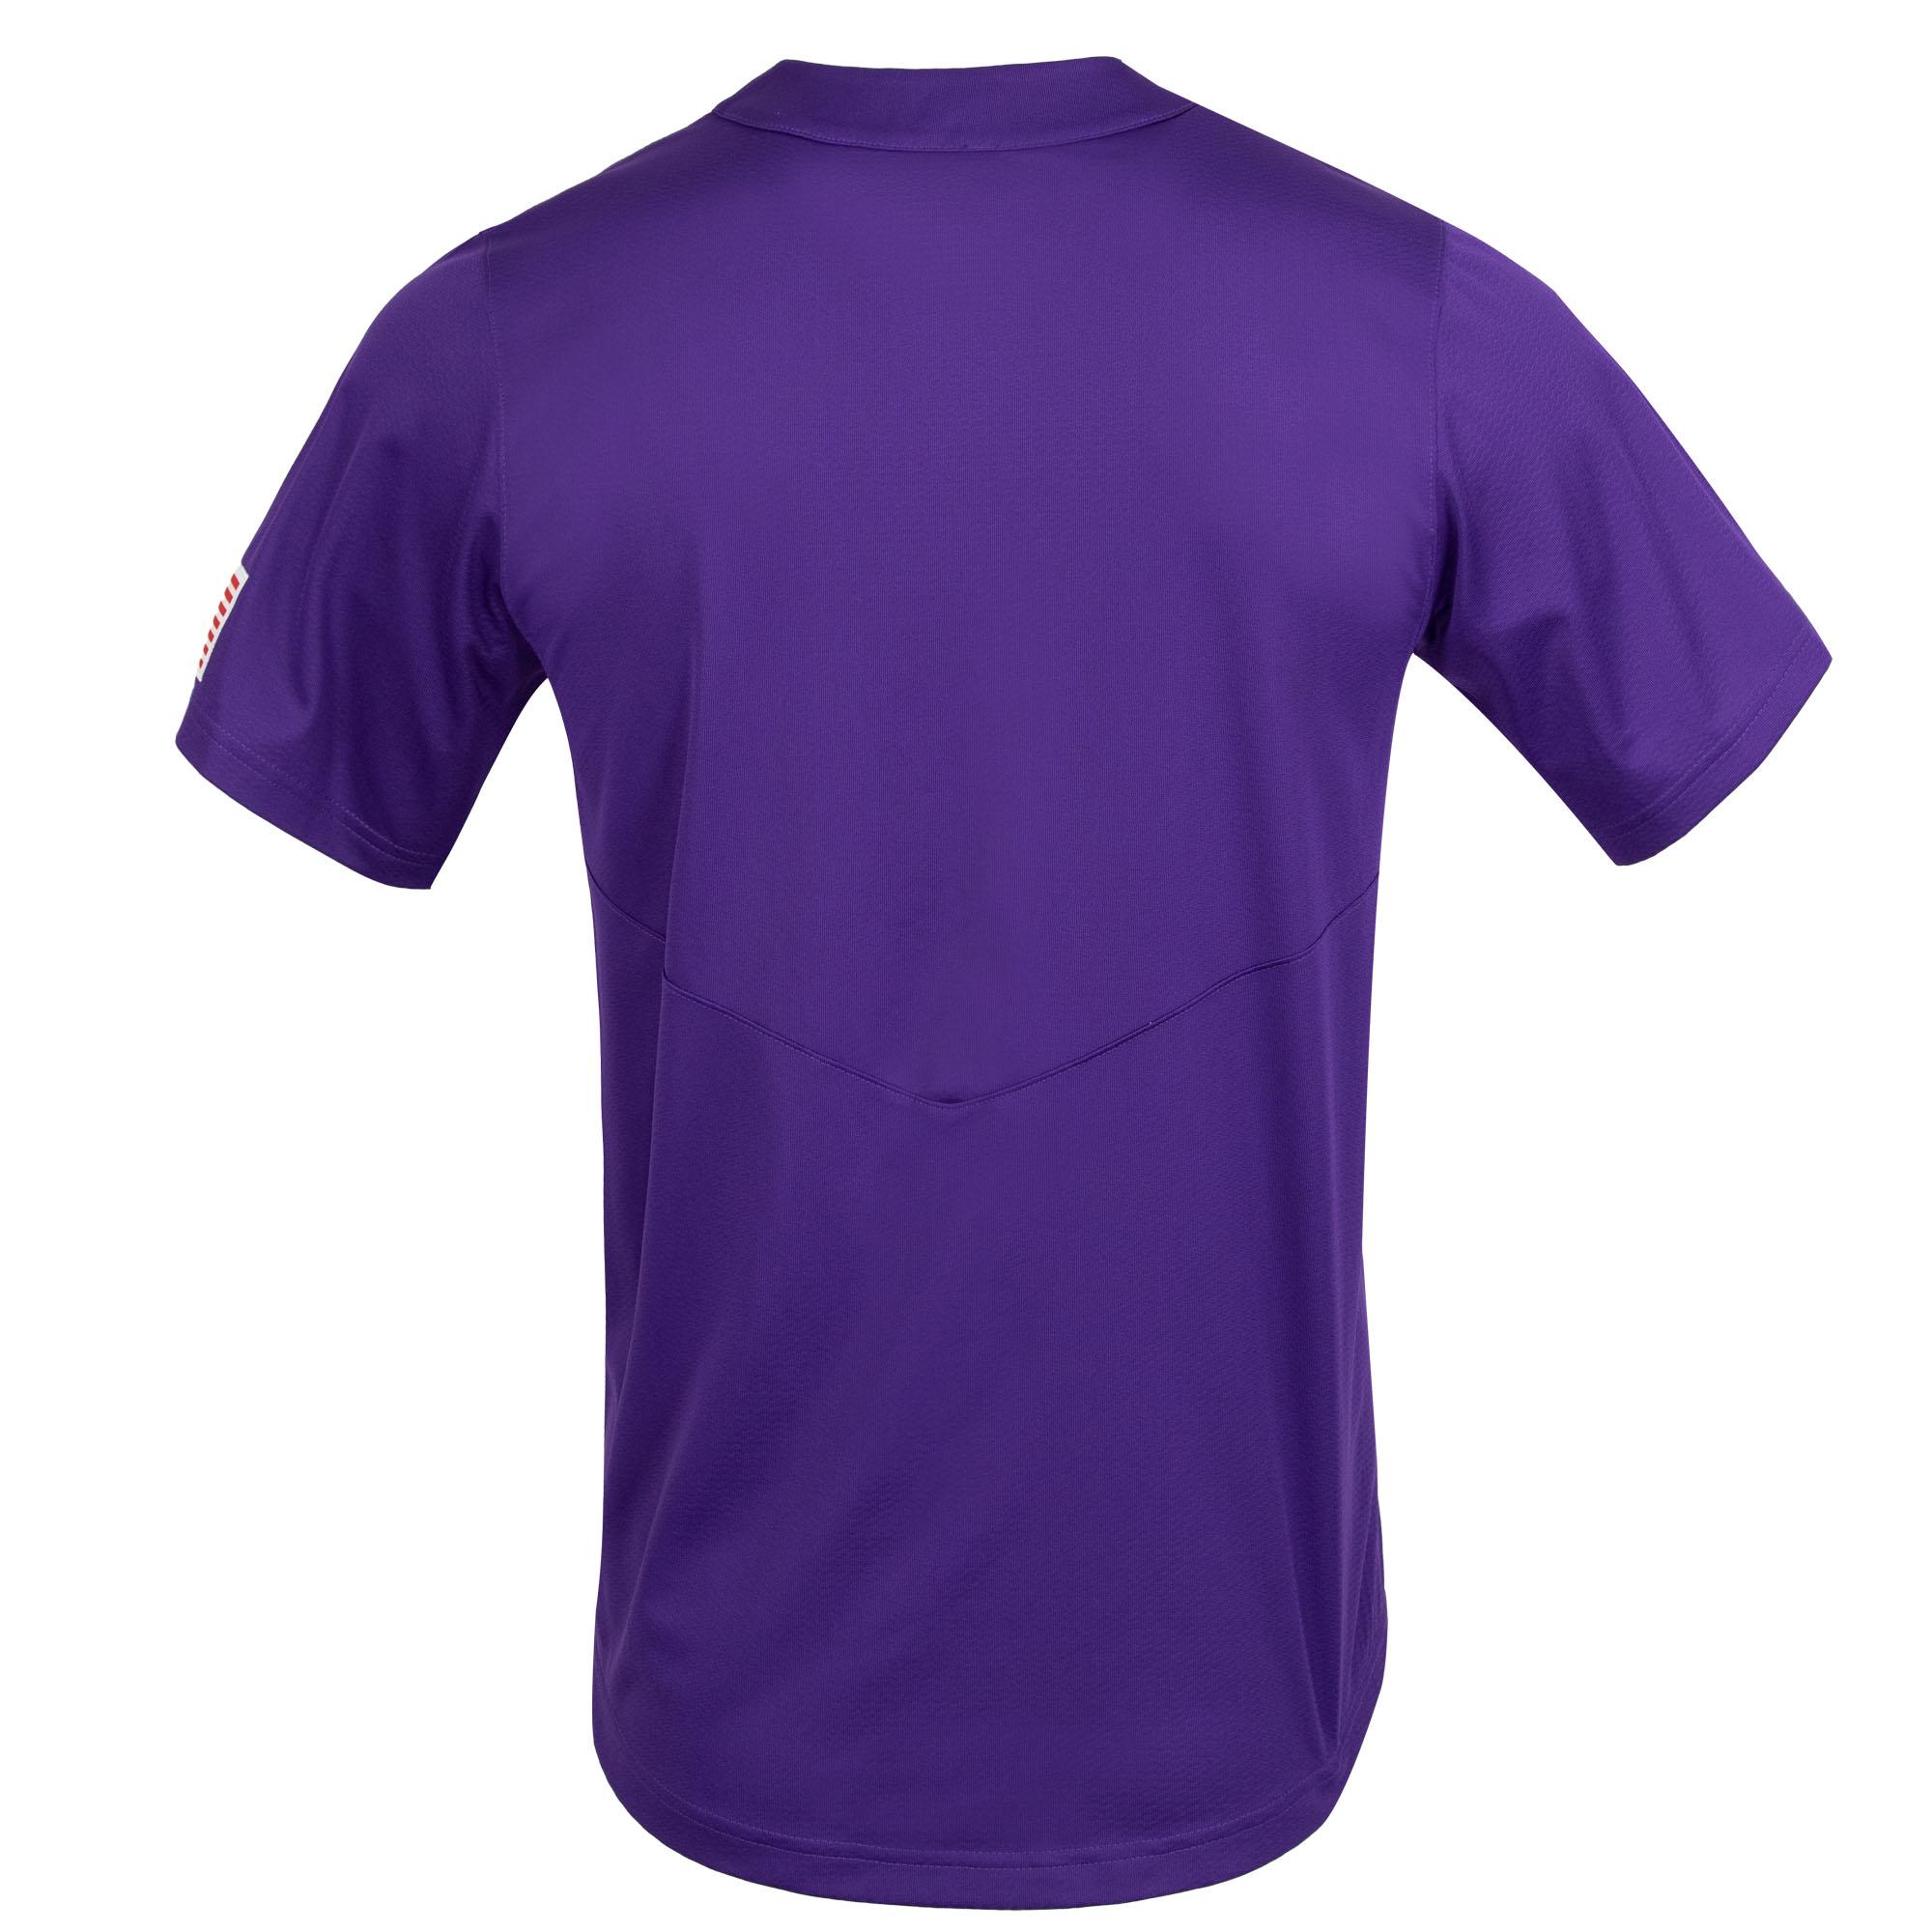 lsu baseball jersey purple